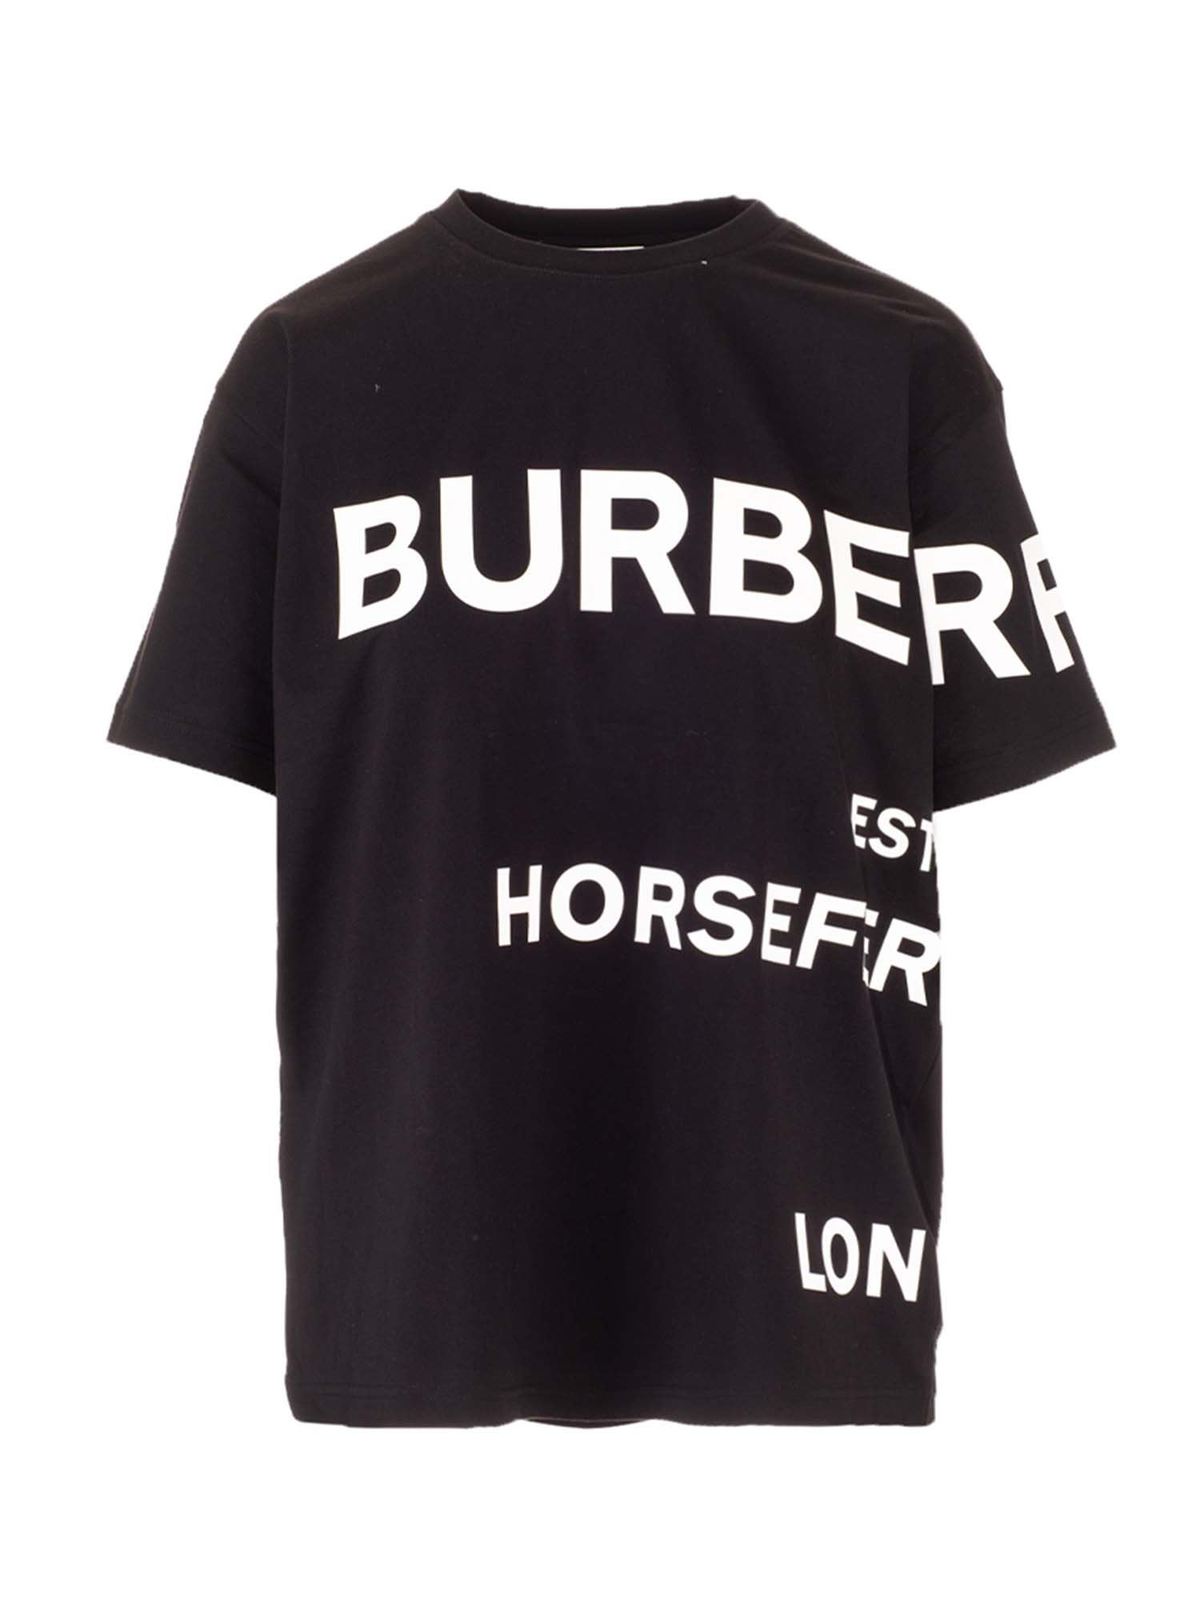 Burberry Camiseta - Horseferry In Negro